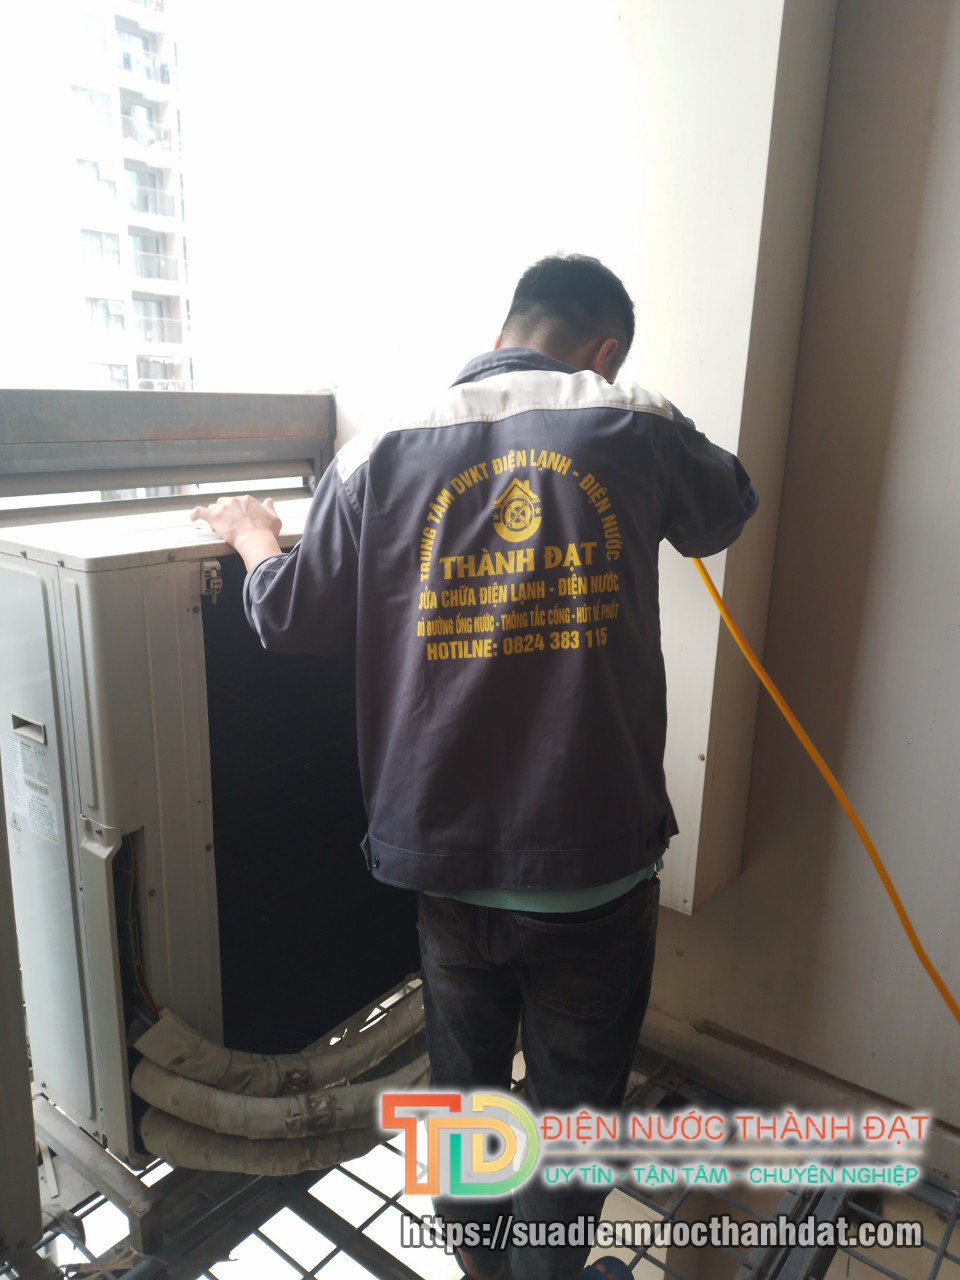 Thợ lắp đặt sửa chữa điều hòa tại Hà Nội - Thành Đạt